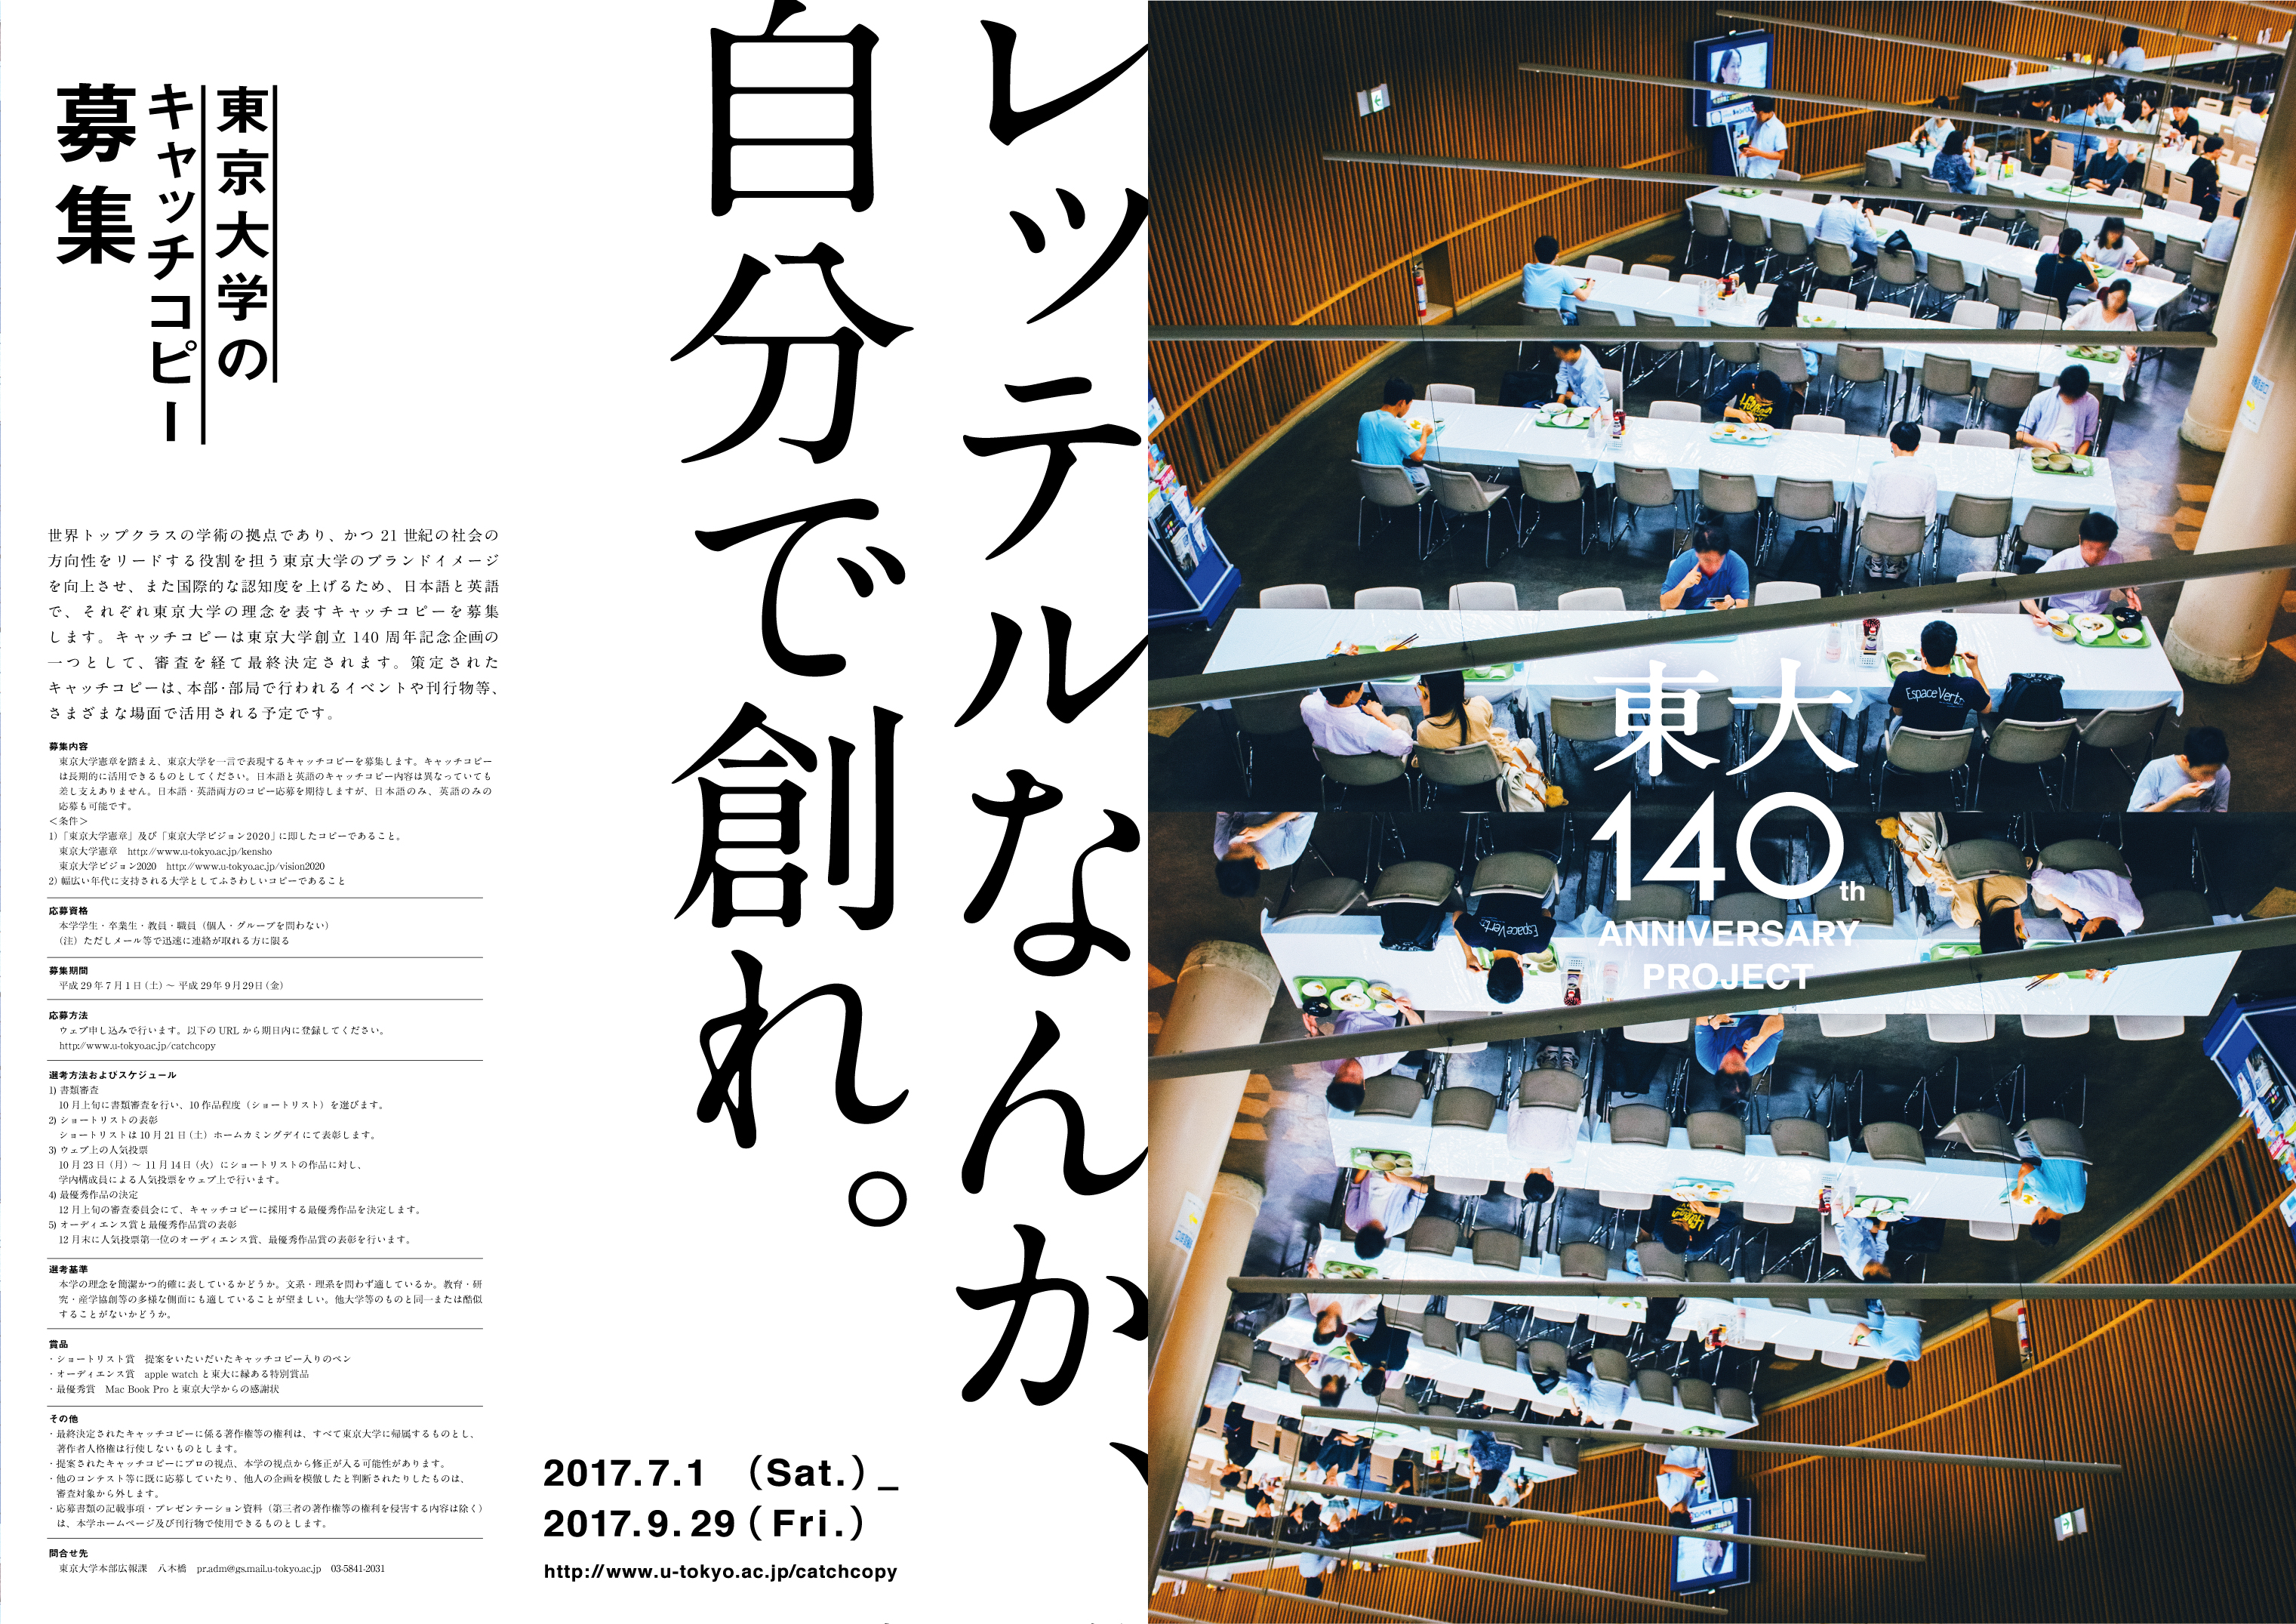 東京大学創設140周年企画 東京大学キャッチコピー が決定しました 東京大学